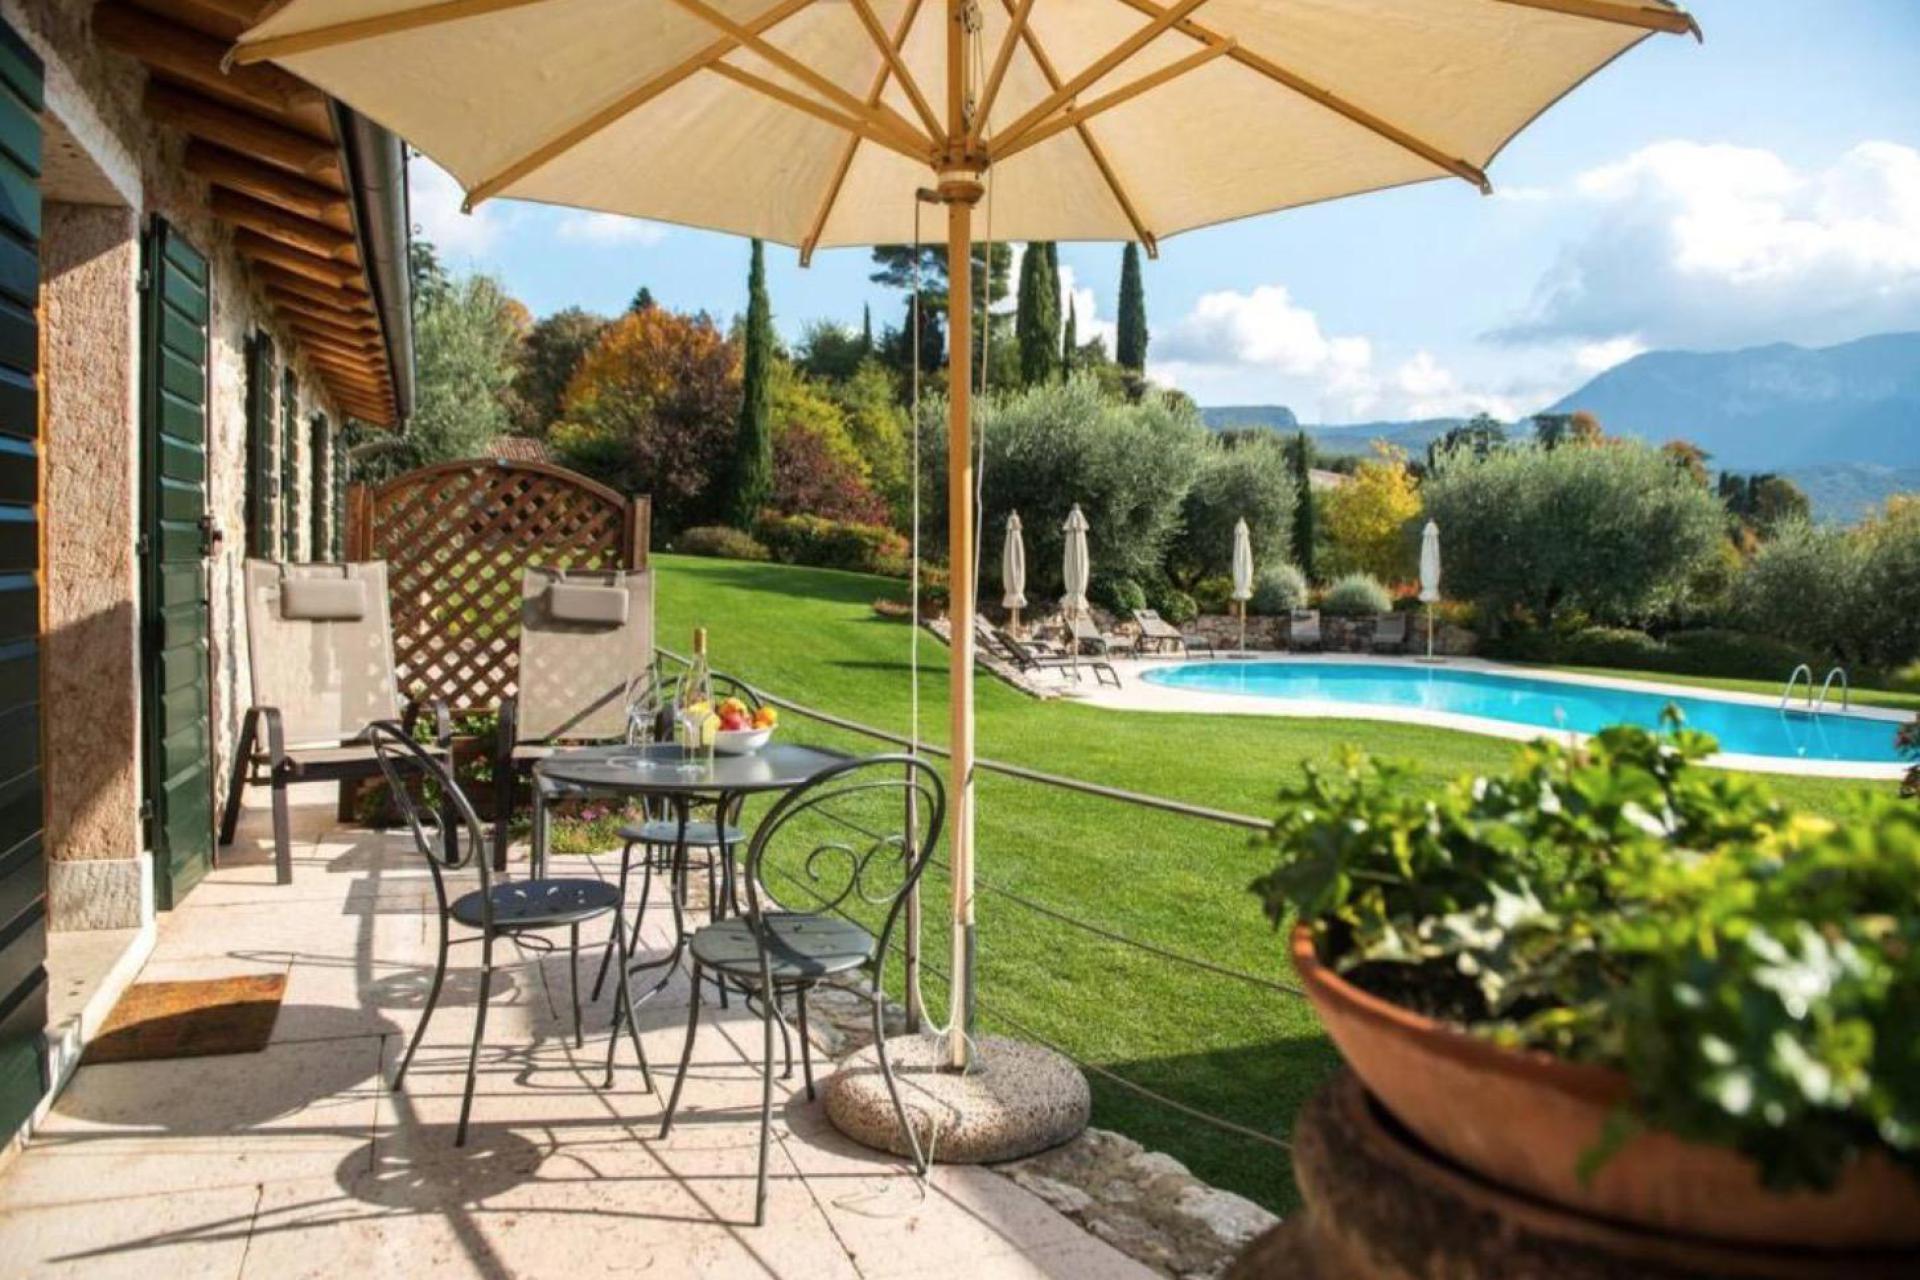 Agriturismo Lake Como and Lake Garda Agriturismo Lake Garda, lovely apartments with terrace